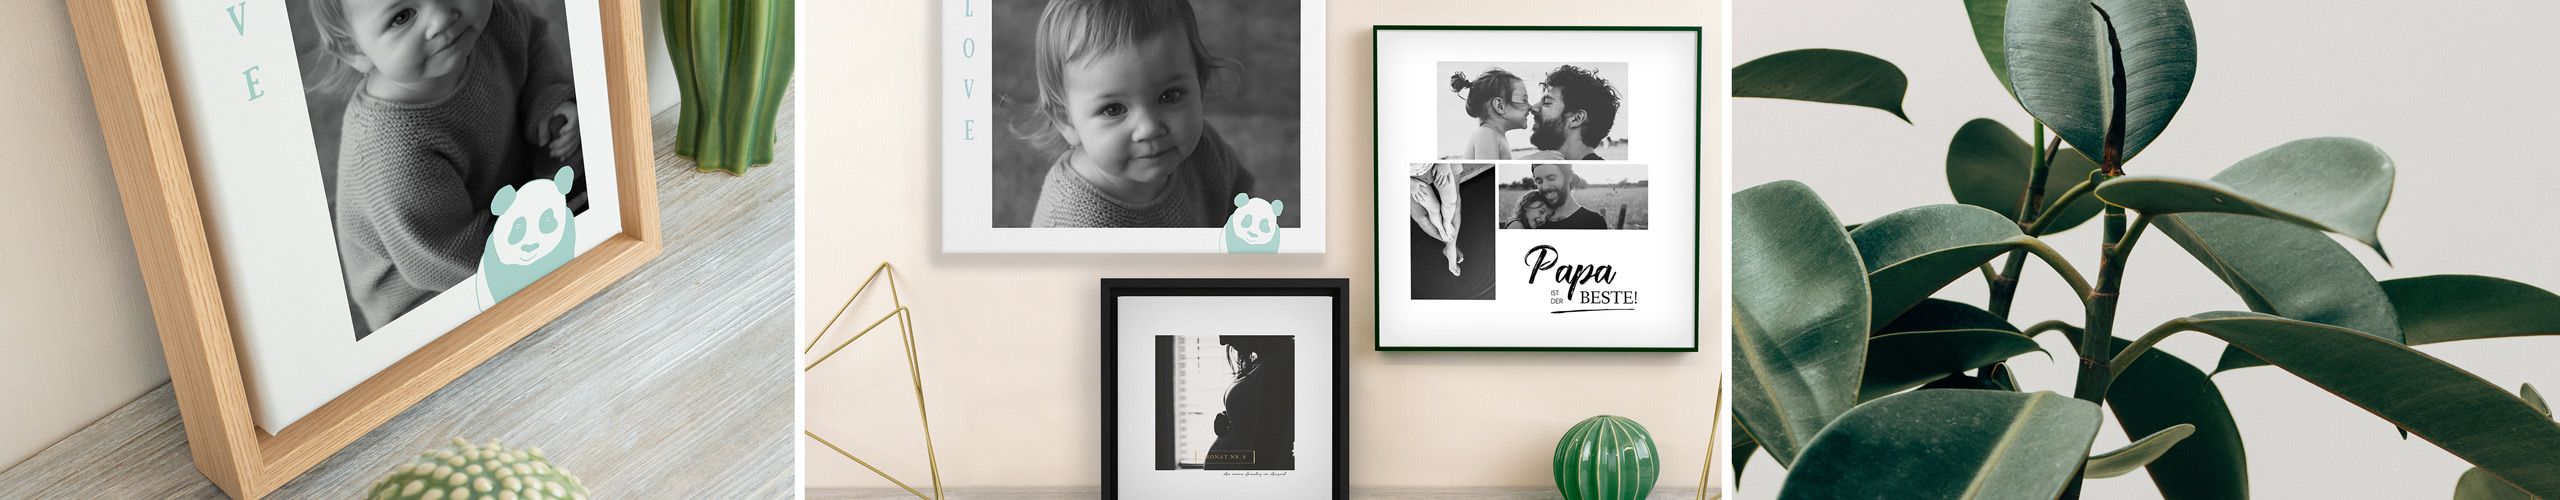 Wandbilder mit verschiedenen Baby- und Kinderfotos